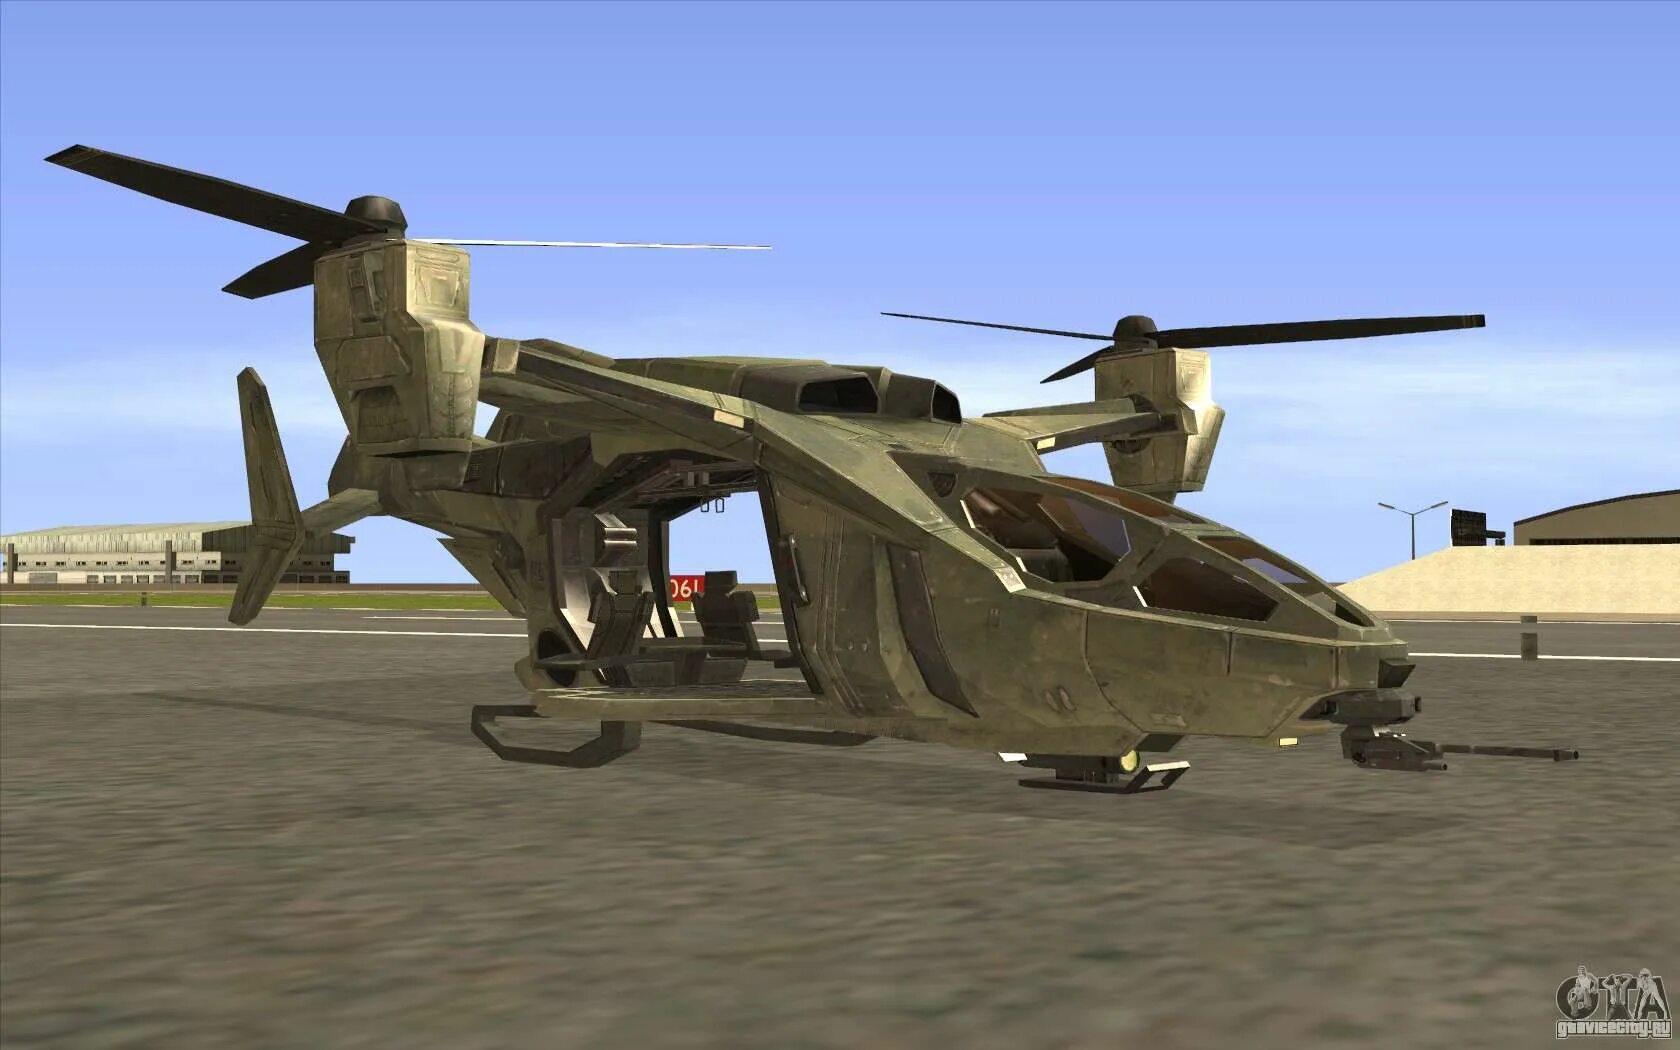 San andreas вертолет. Вертолет Hunter GTA San Andreas. ГТА Сан андреас вертолет Хантер. GTA San Andreas вертолет. Вертолеты Hunter для ГТА Сан андреас.